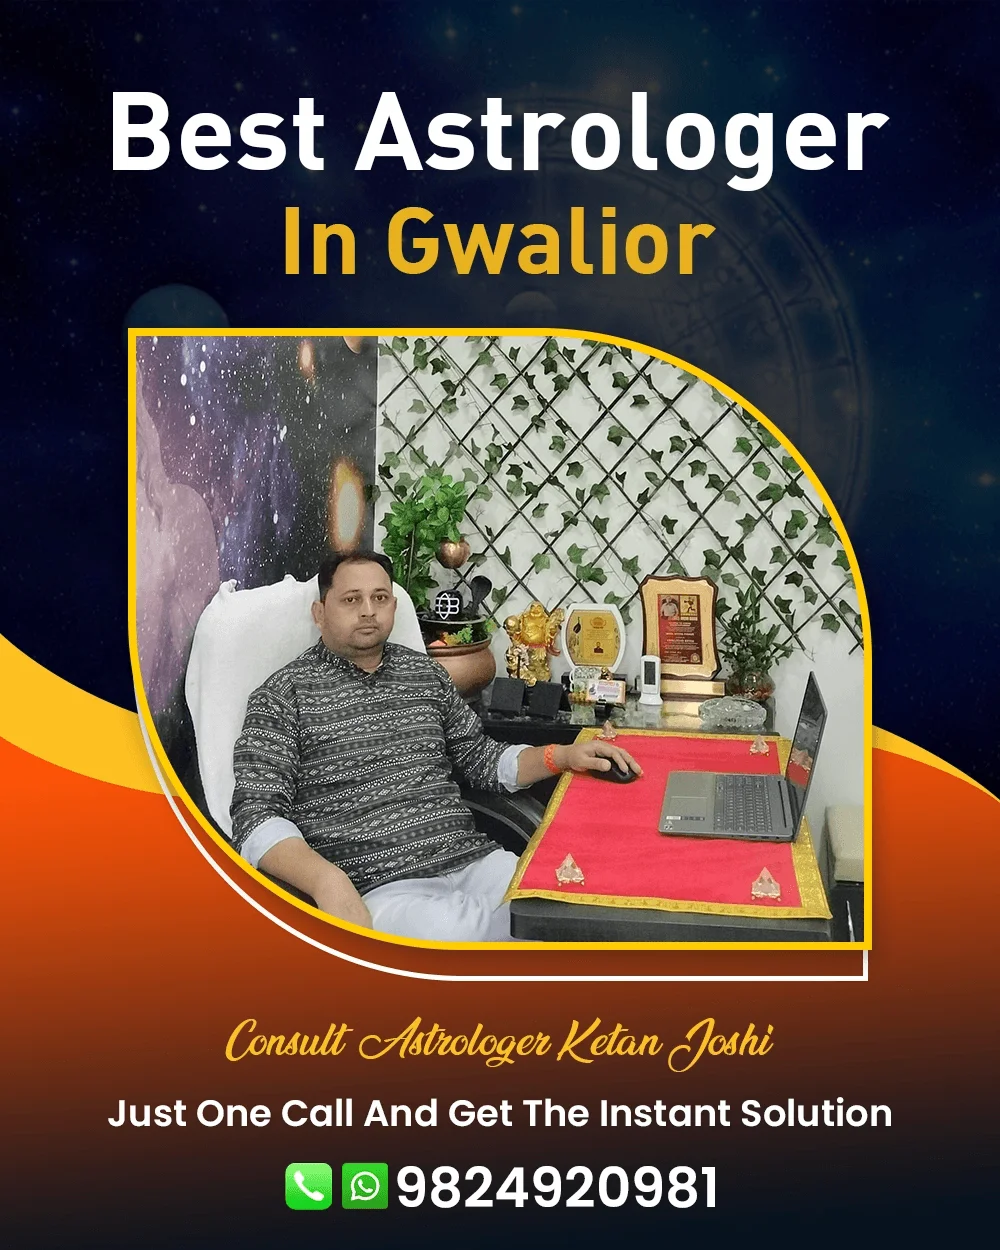 Best Astrologer In Gwalior